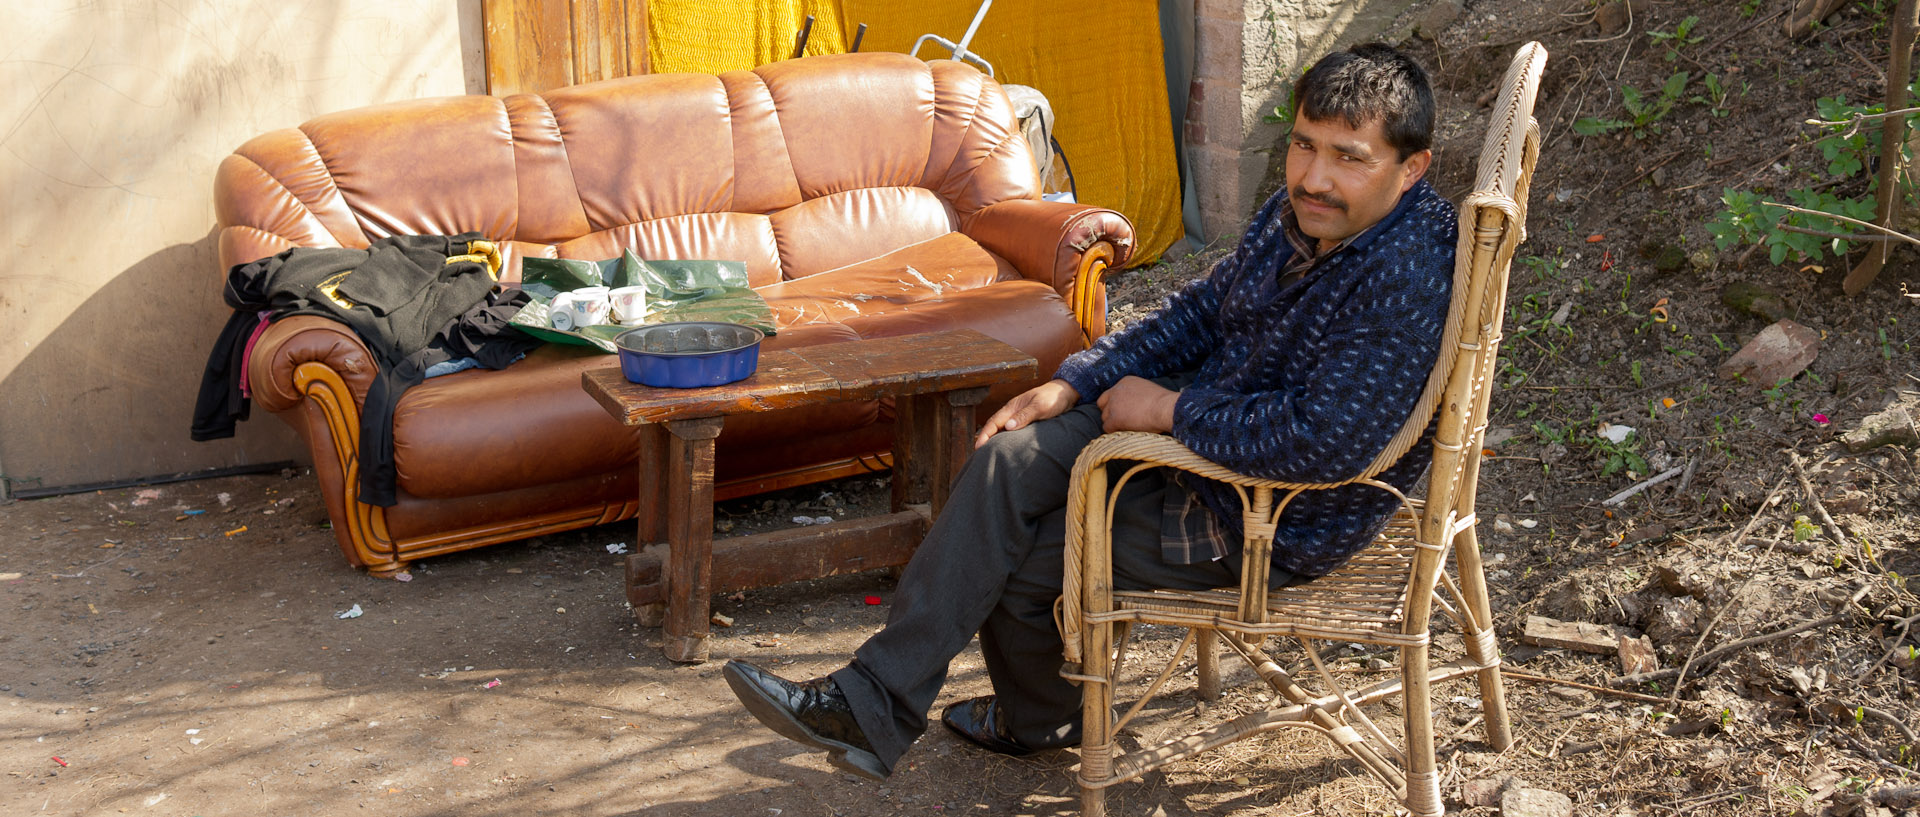 Homme dans un fauteuil, dans un campement de Roms, rue de Gand, à Lille.